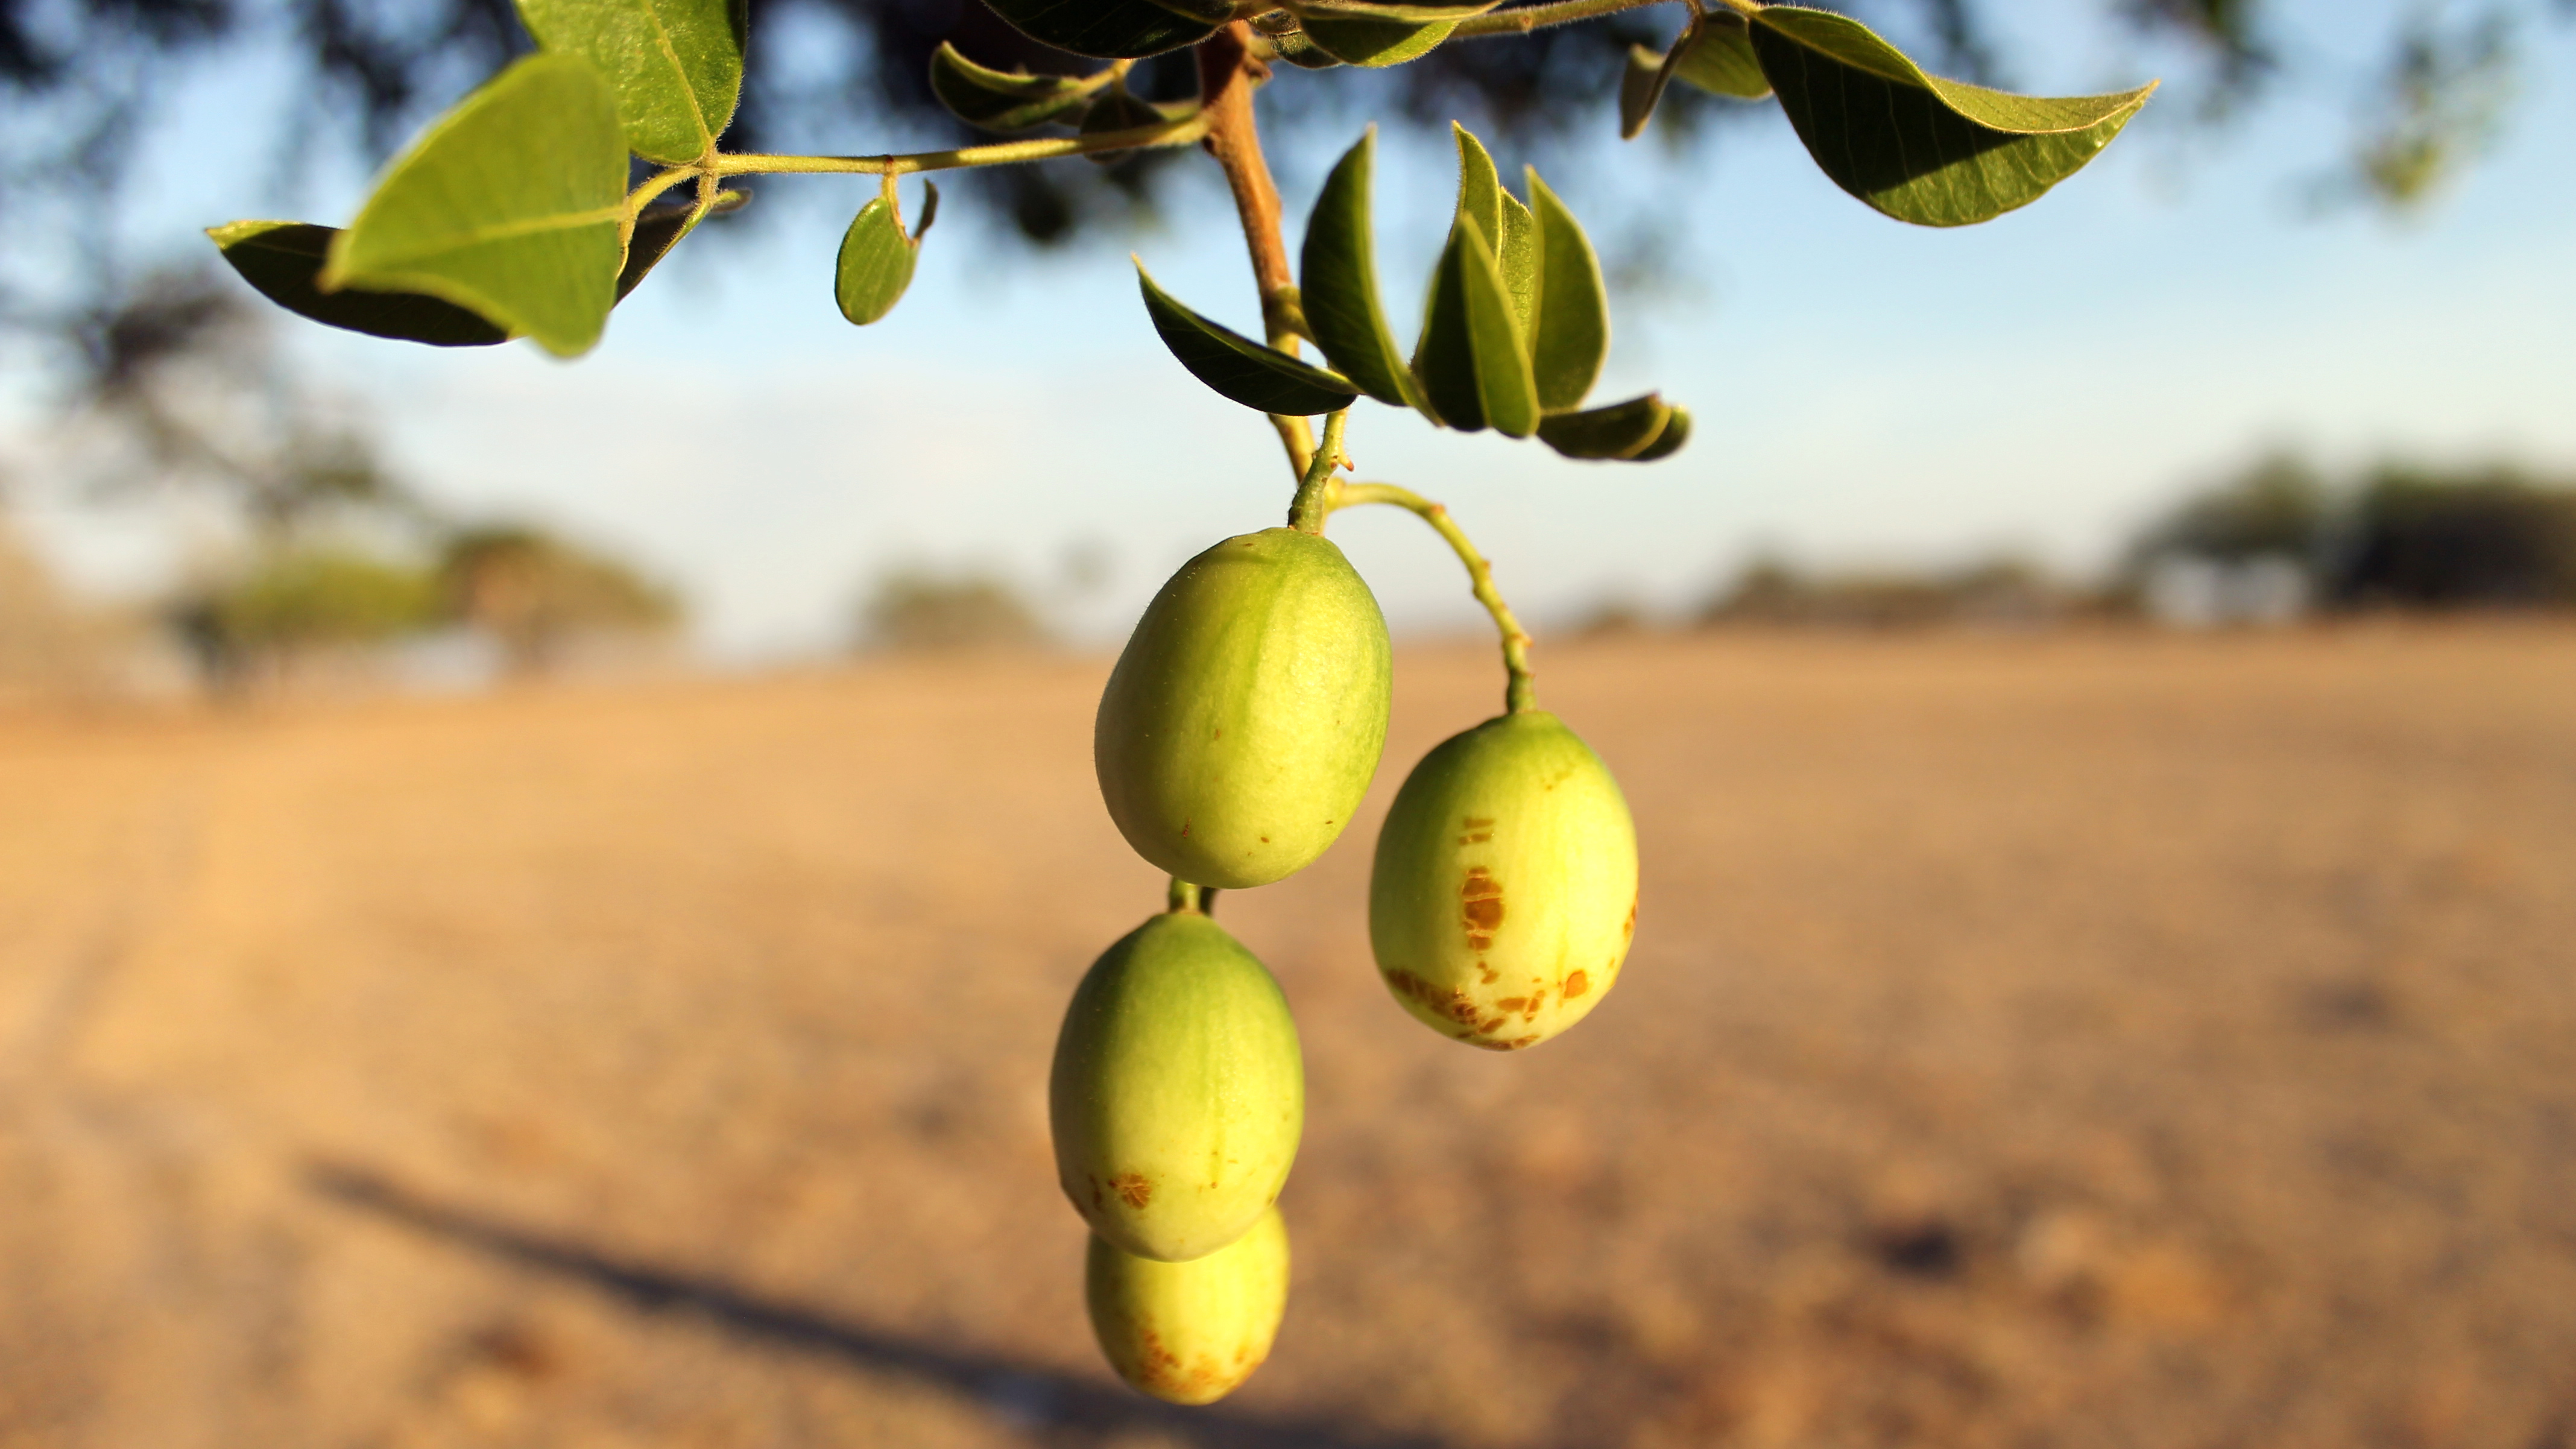 Umbu: Para Euclides da Cunha, “é a árvore sagrada do sertão”. A fruta, de sabor agridoce e rica em vitamina C, é consumida in natura e em polpa do Ceará ao norte de Minas Gerais (Foto: Mariana Oliveira/WRI Brasil)